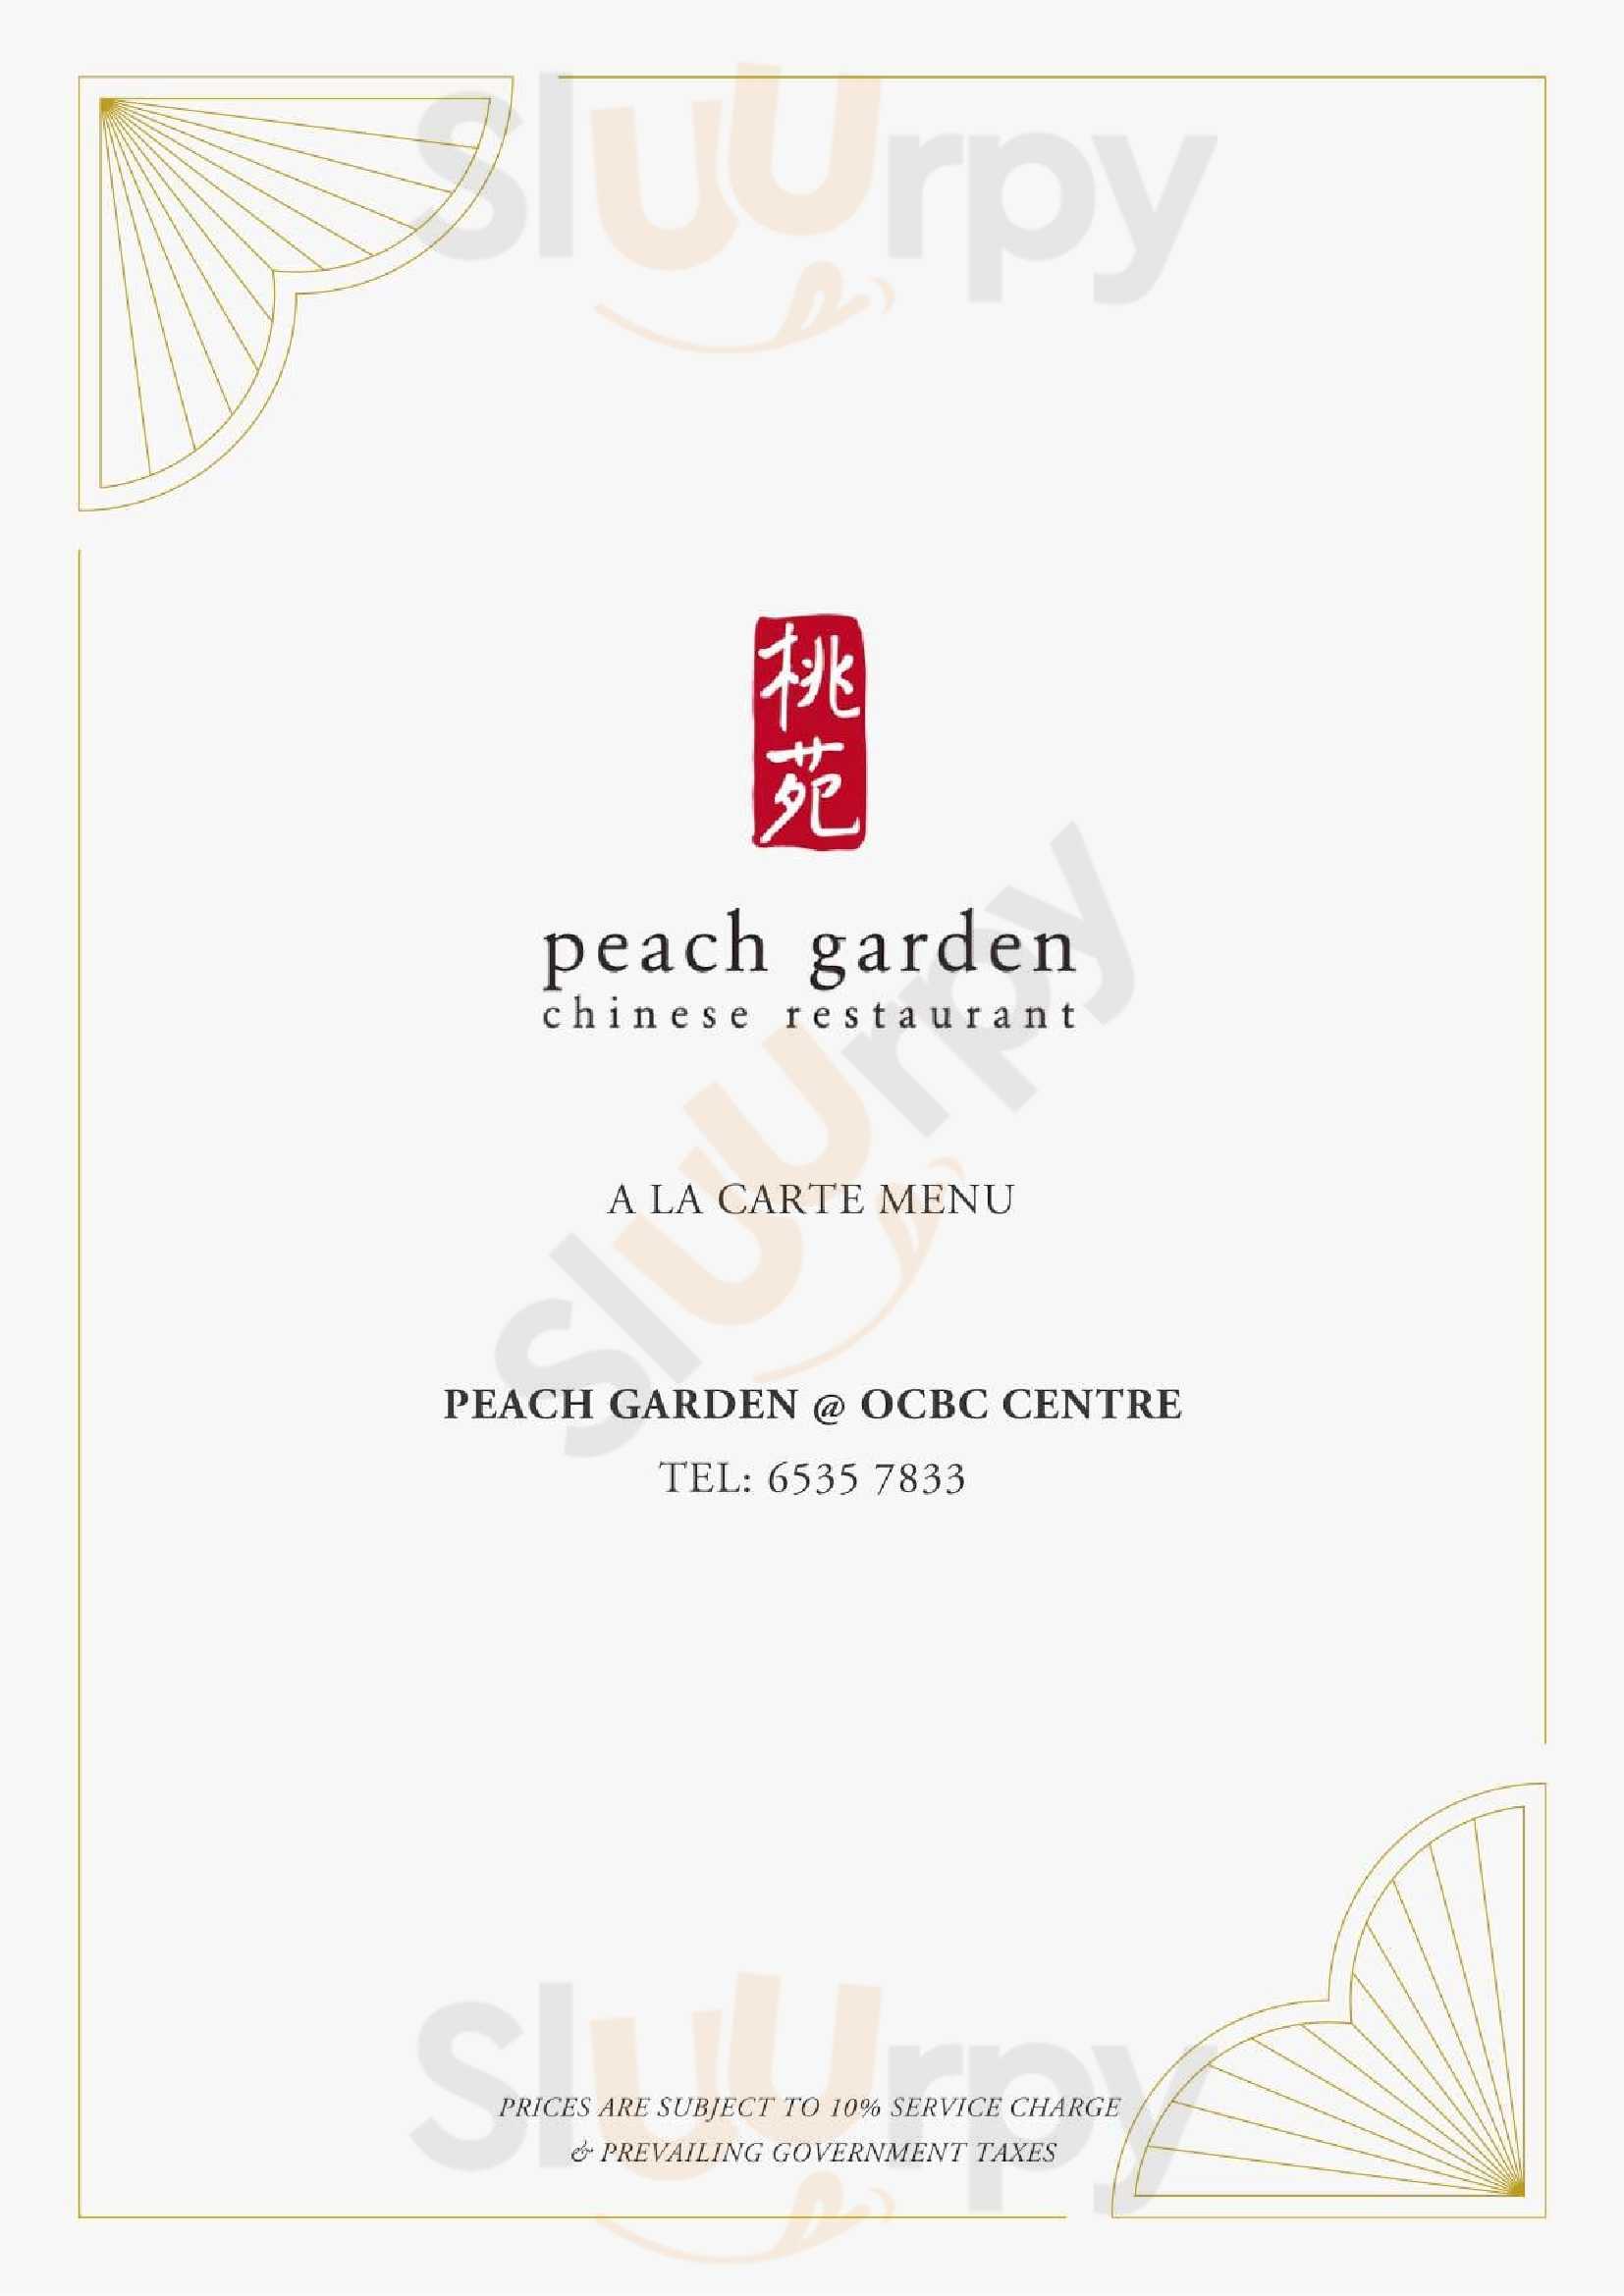 Peach Garden @ Ocbc Centre Singapore Menu - 1